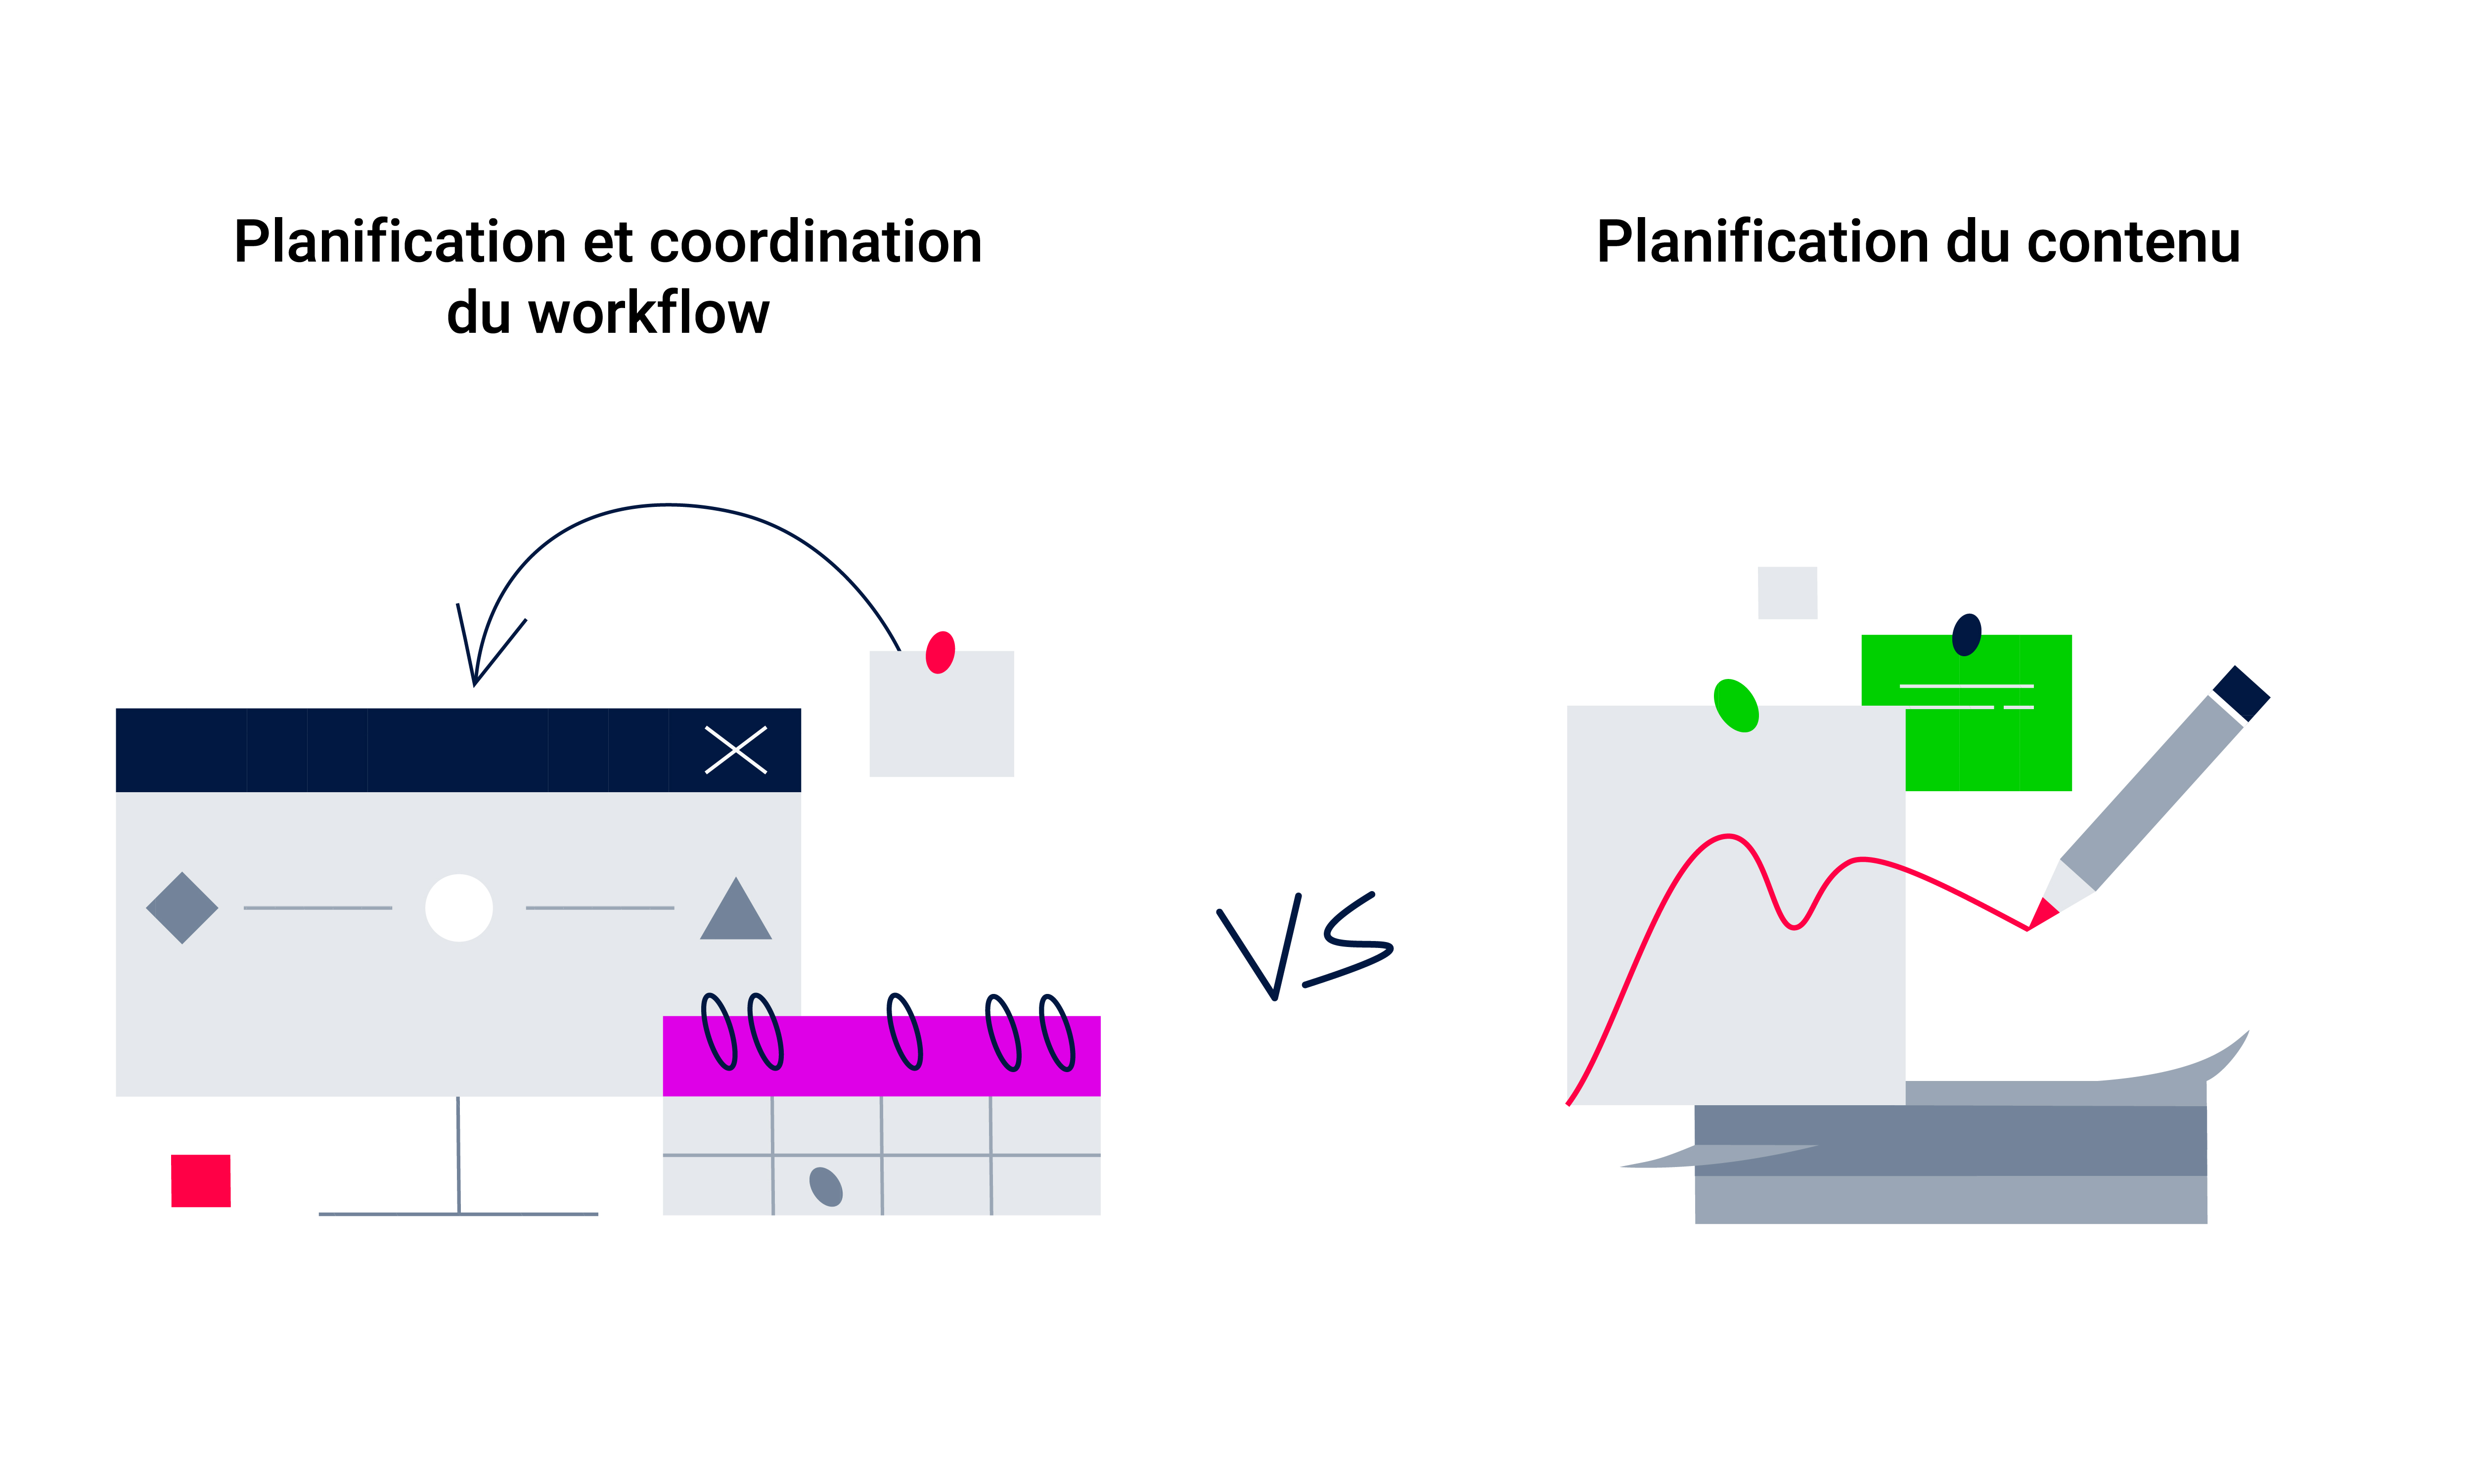 Planification du contenu vs Planification et coordination du workflow